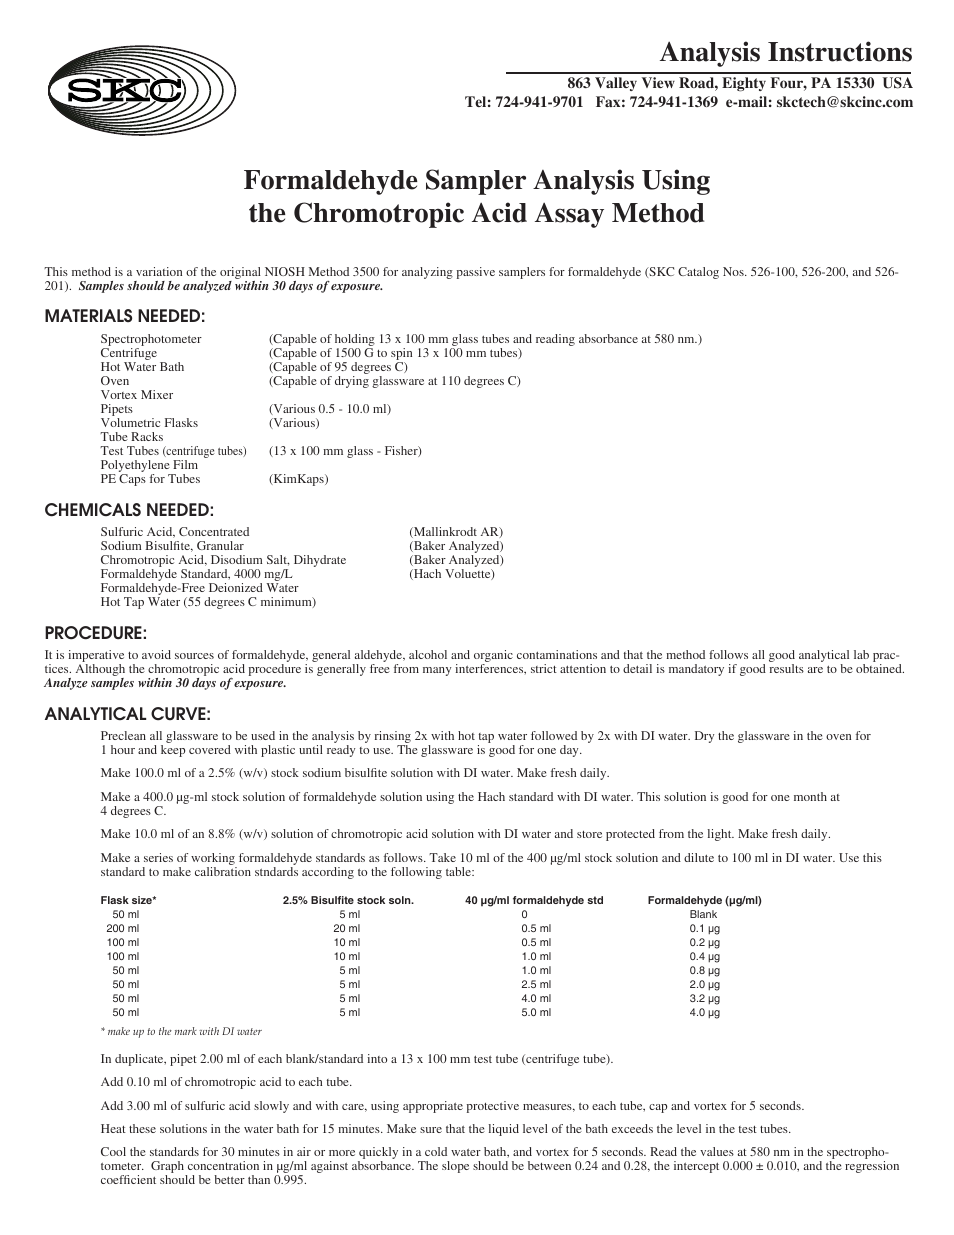 526-100 Analysis Instructions Using the Chromotropic Acid Assay Method